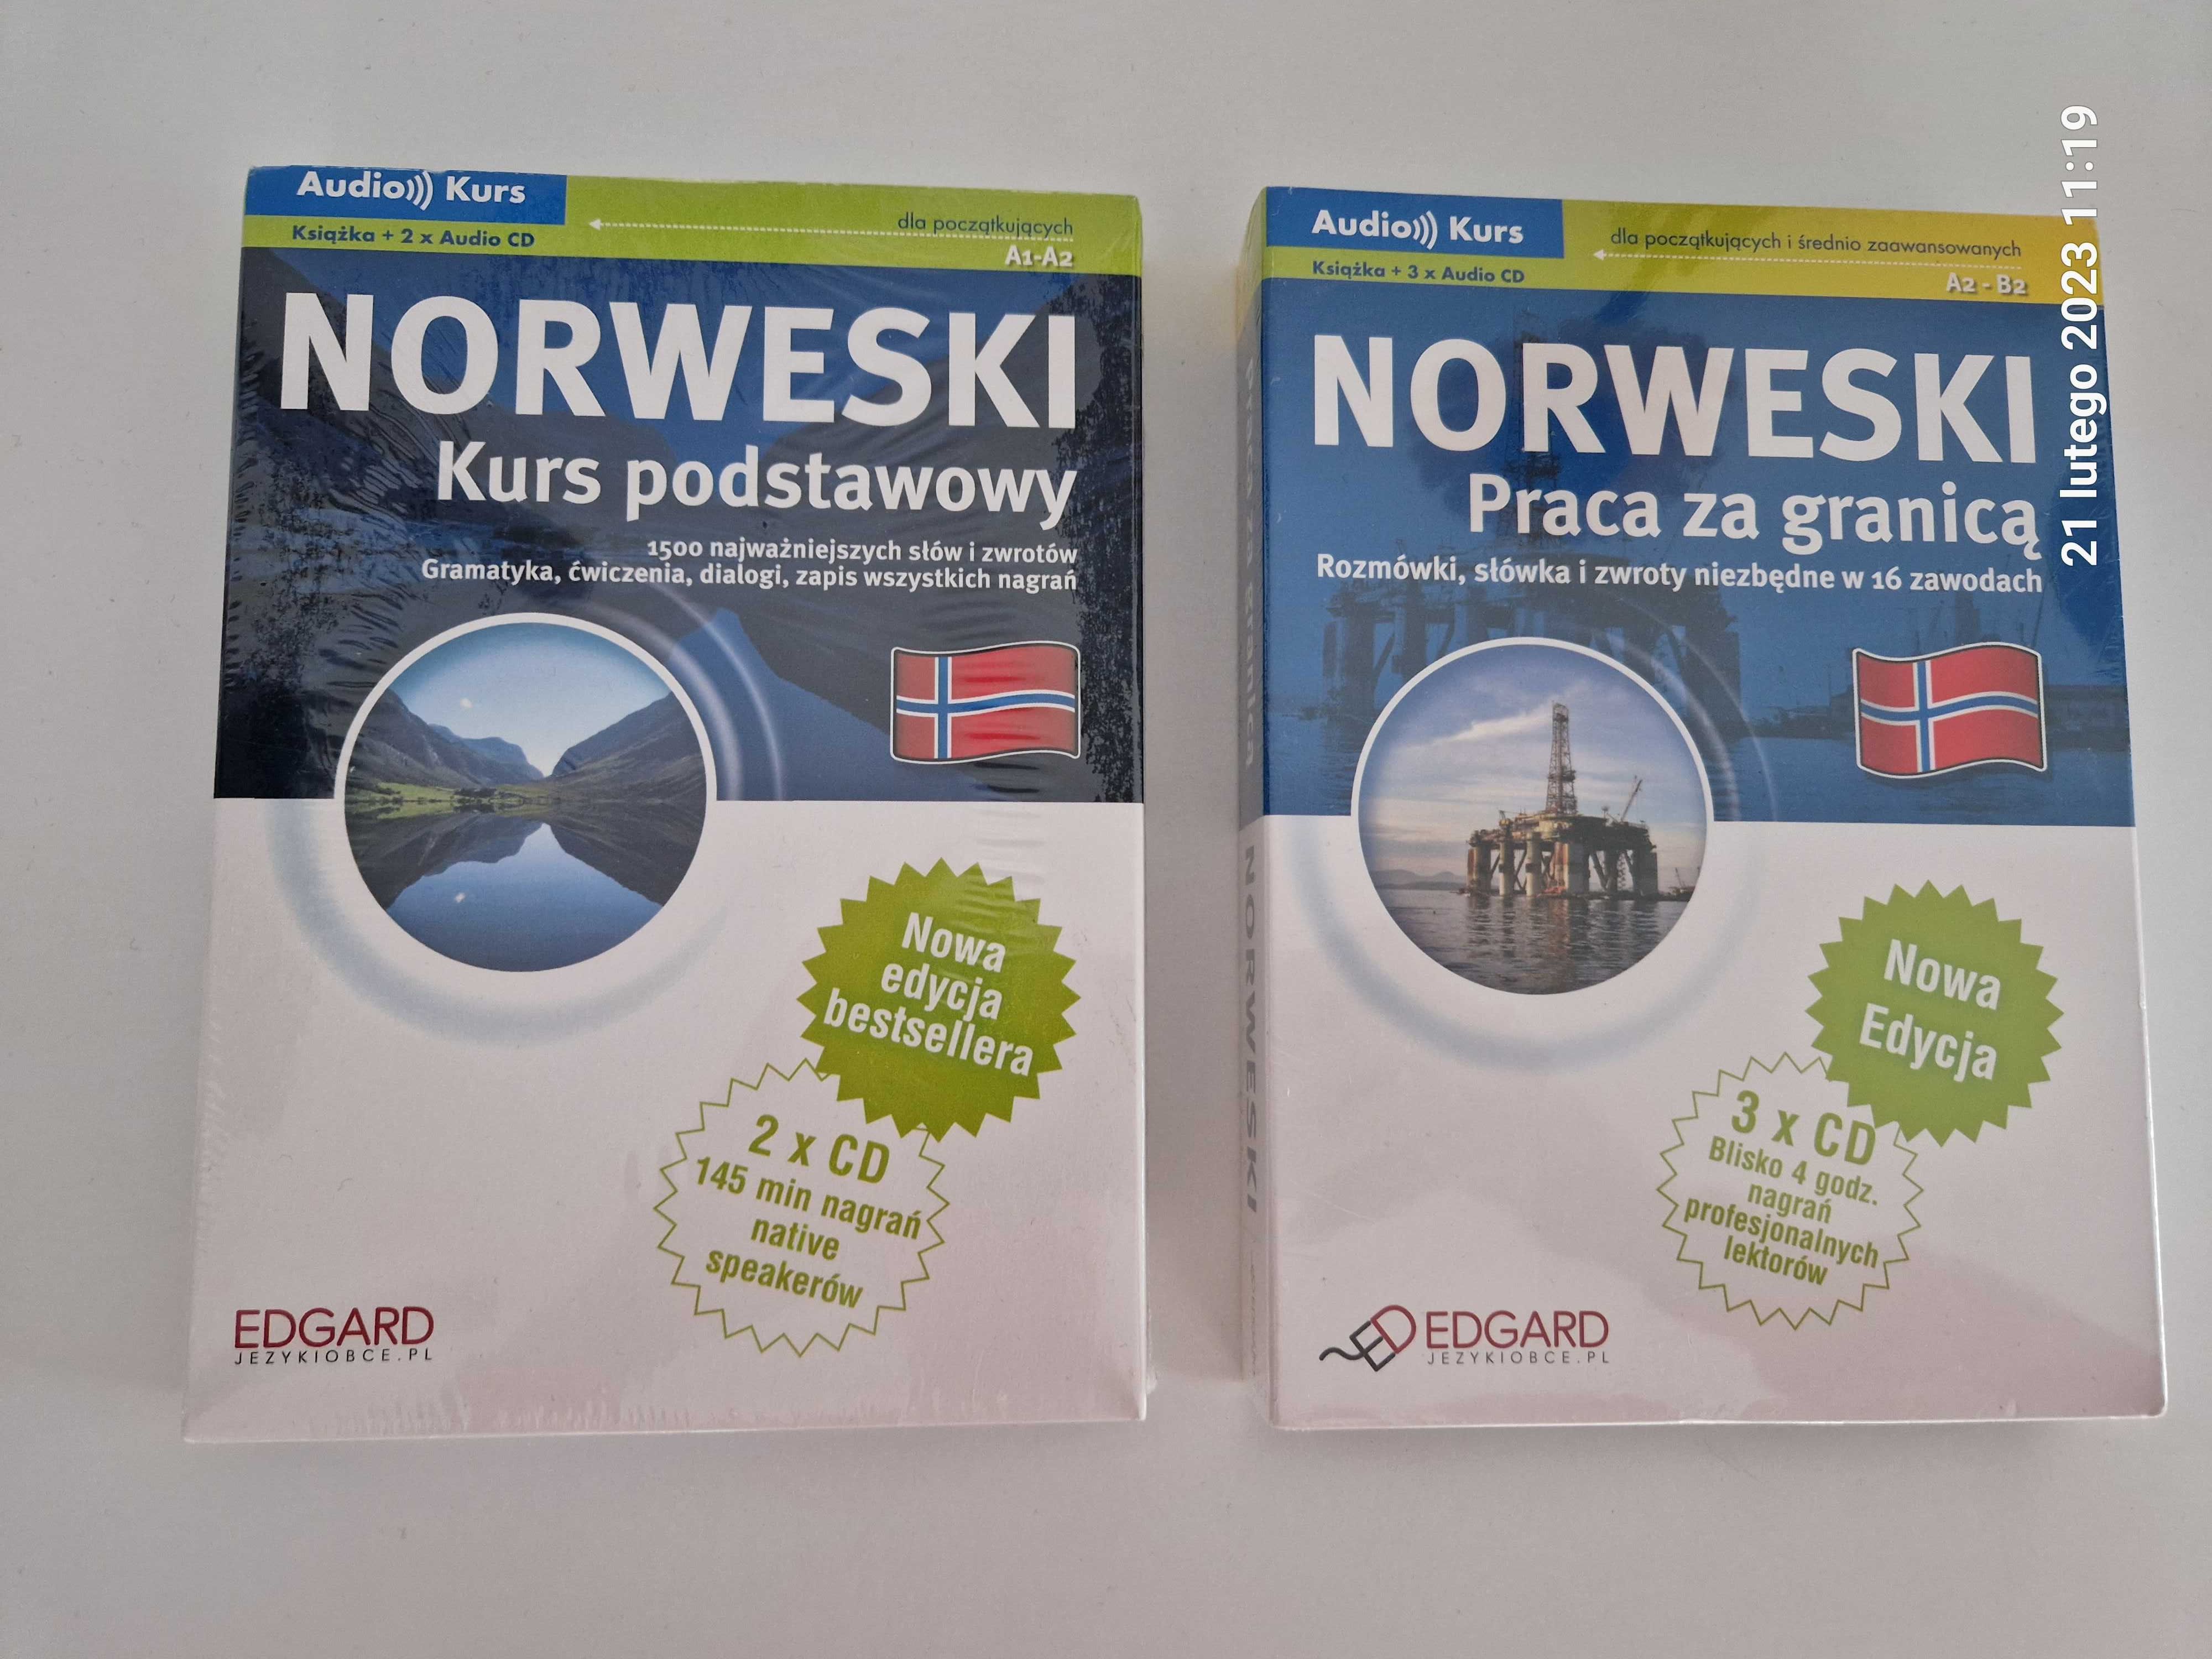 Nowy norweski dla poczatkujacych. Kurs z płytą.